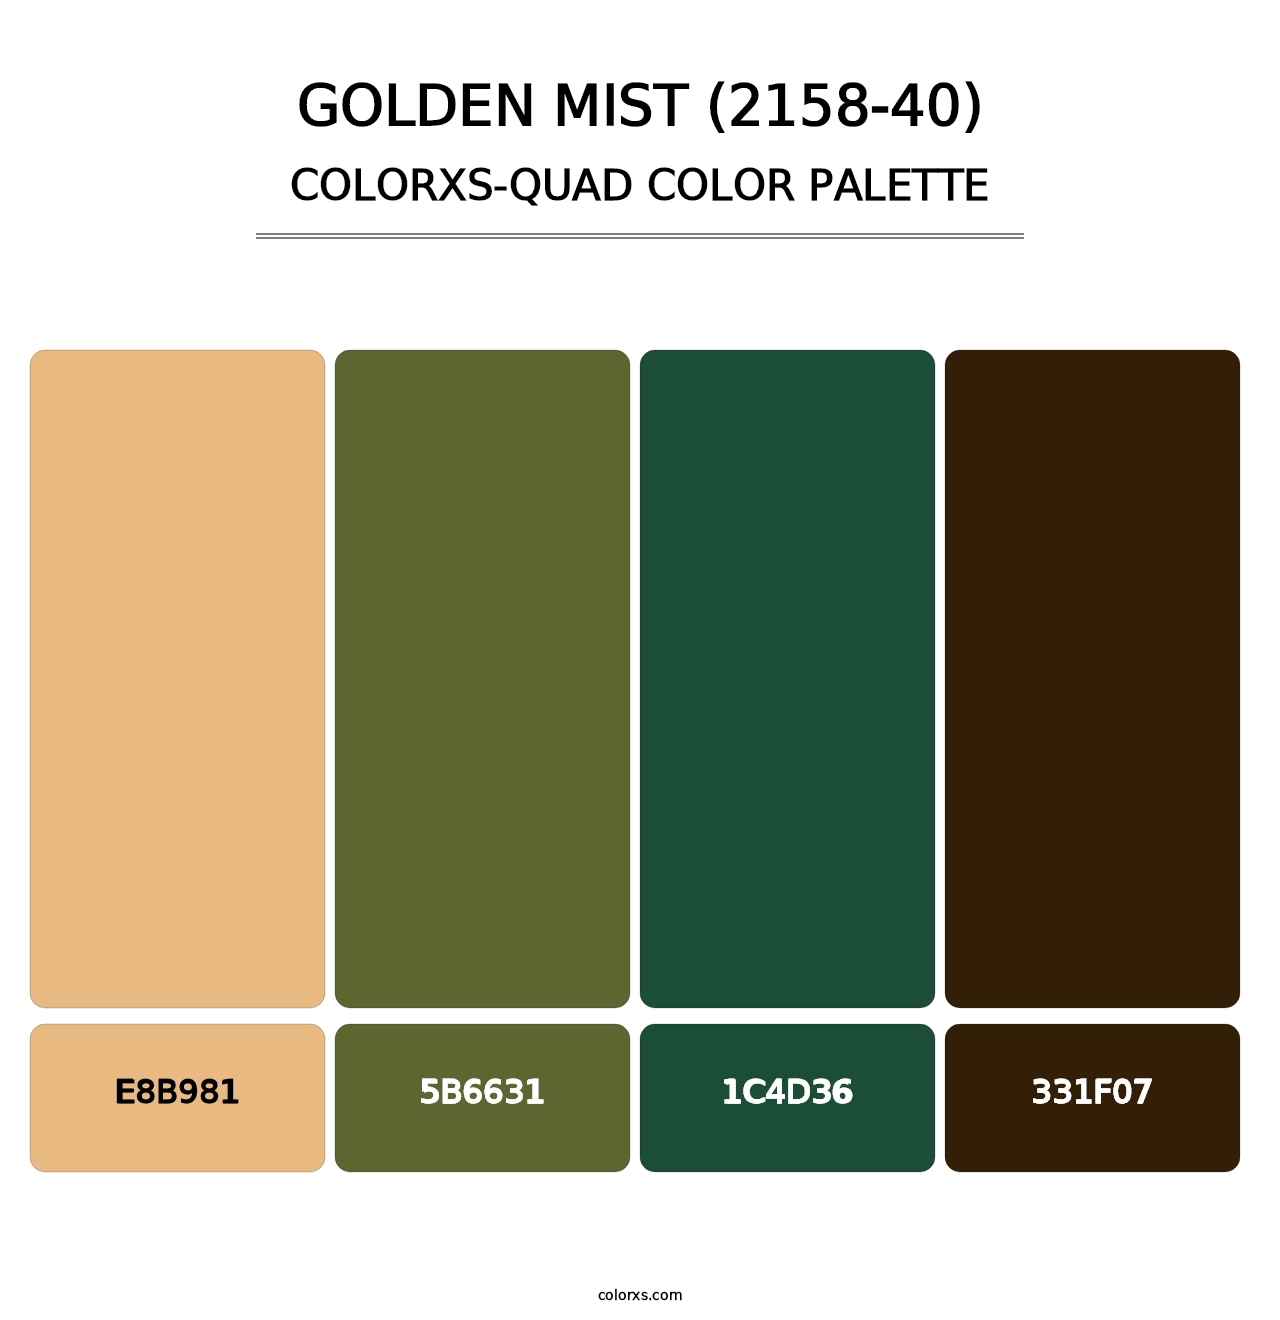 Golden Mist (2158-40) - Colorxs Quad Palette